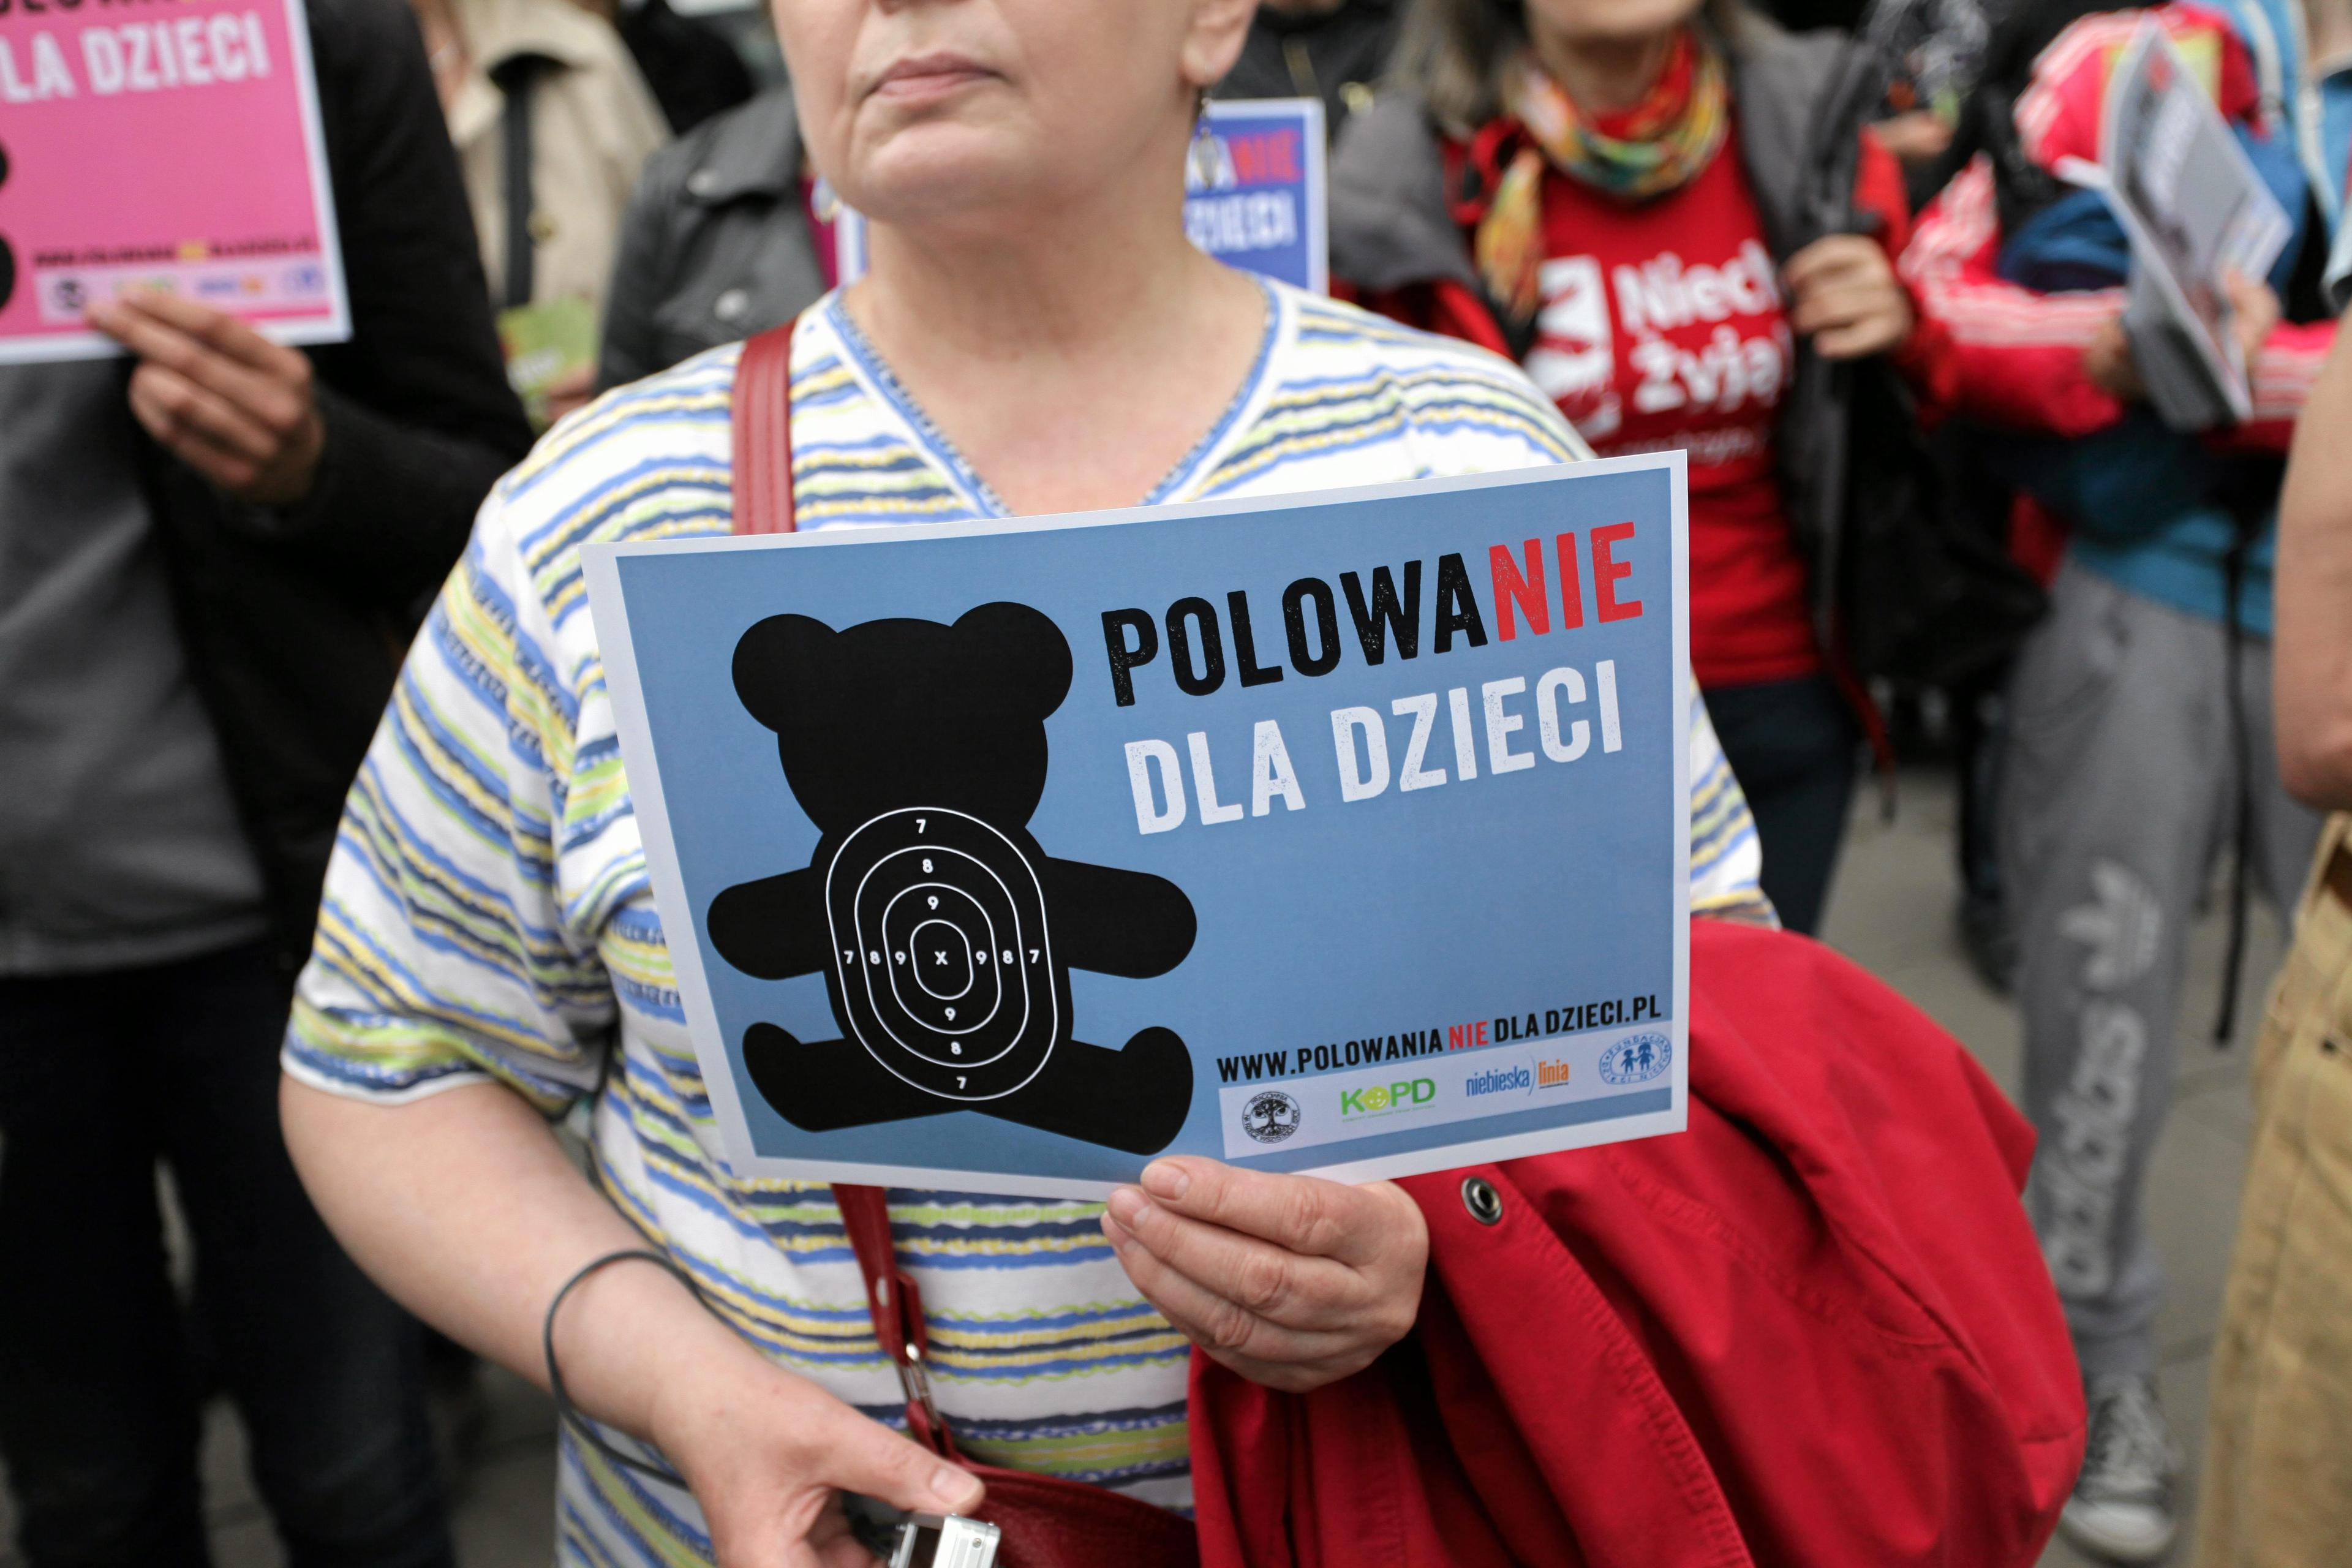 26.05.2015 Warszawa , Sejm . Demonstracja w obronie zwierzat " Polowanie nie dla dzieci " .
Fot. Slawomir Kaminski / Agencja Wyborcza.pl